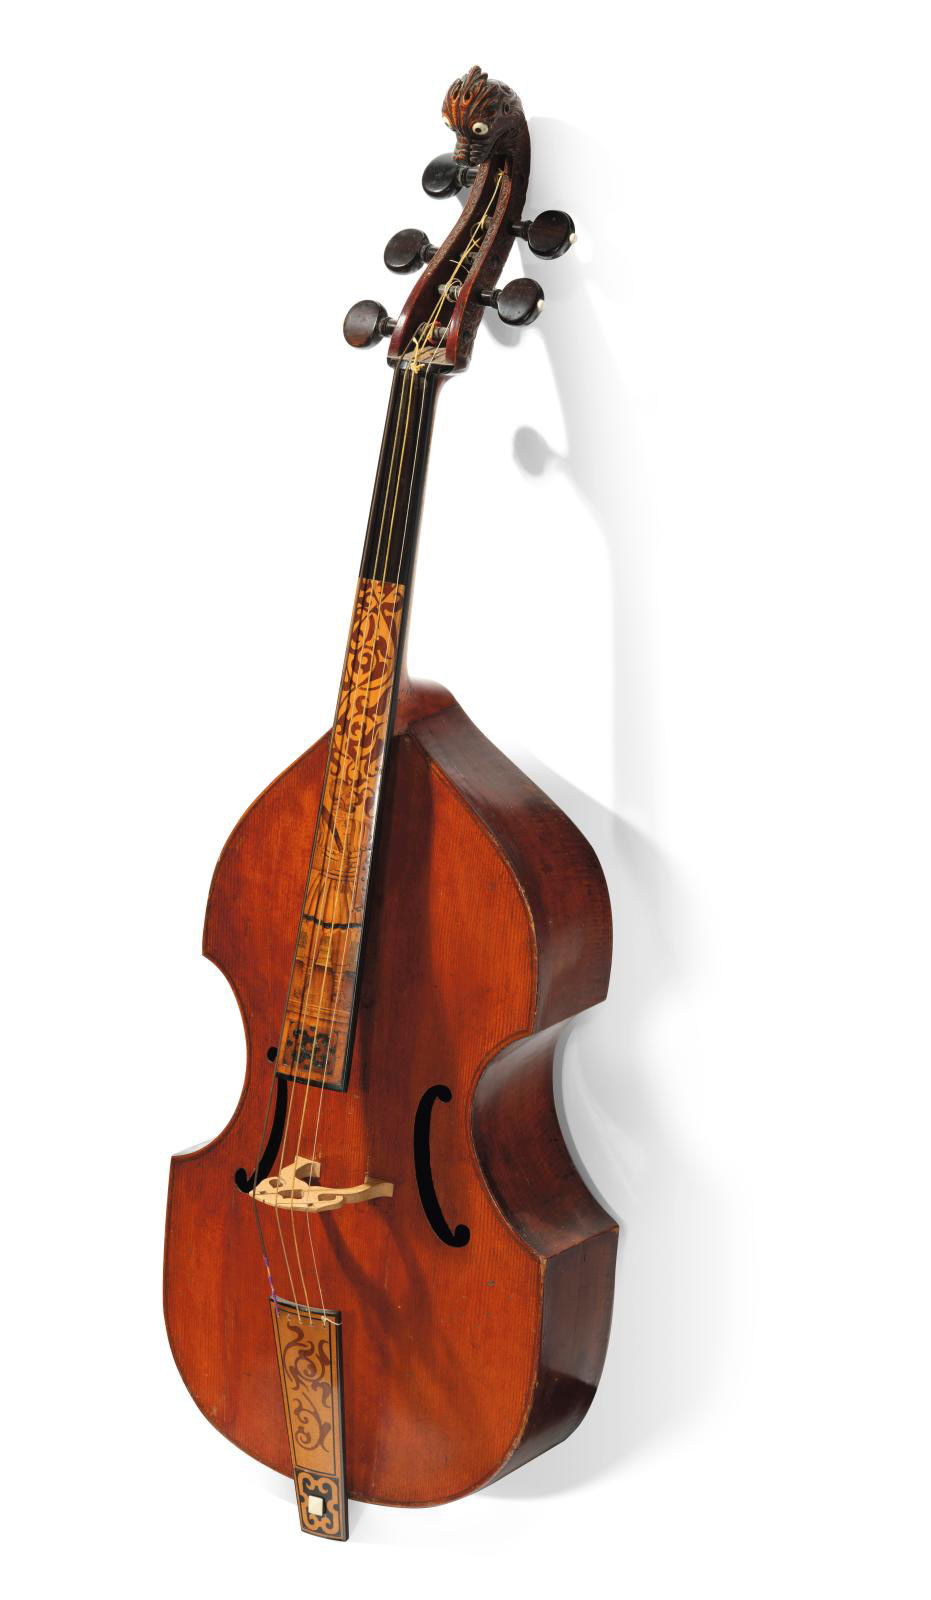 An Exceptional 16th-Century Viol by Duiffopruggar